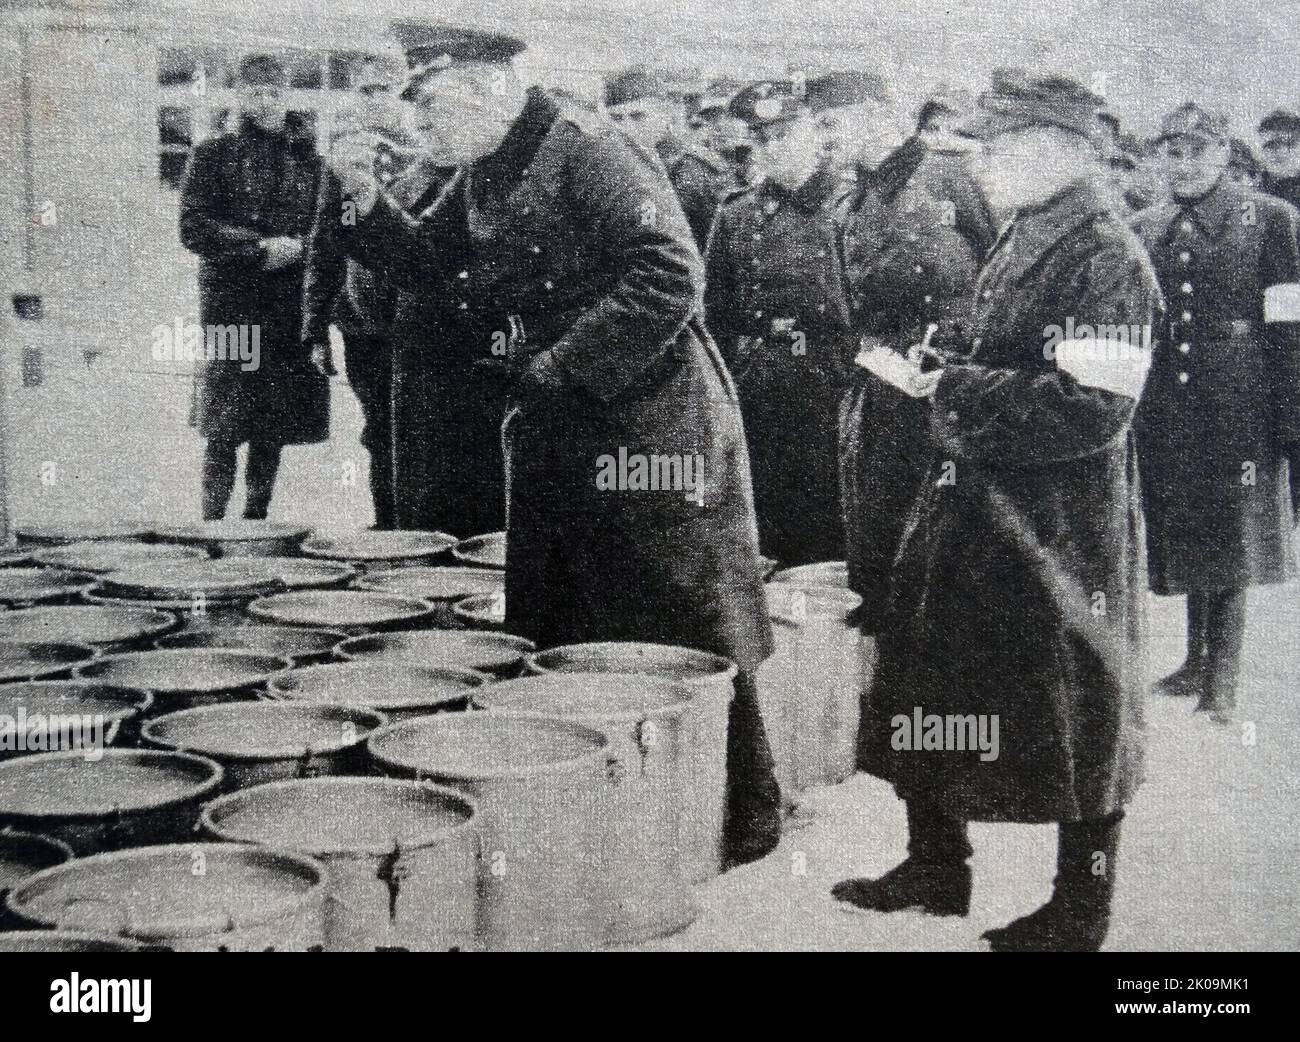 Un ufficiale tedesco in servizio a Wulzburg prigioniero del campo di guerra durante la seconda guerra mondiale, assaggi la minestra prima che venga servita. Secondo la Convenzione della Croce Rossa, i prigionieri dovrebbero ricevere lo stesso cibo delle guardie. Foto Stock